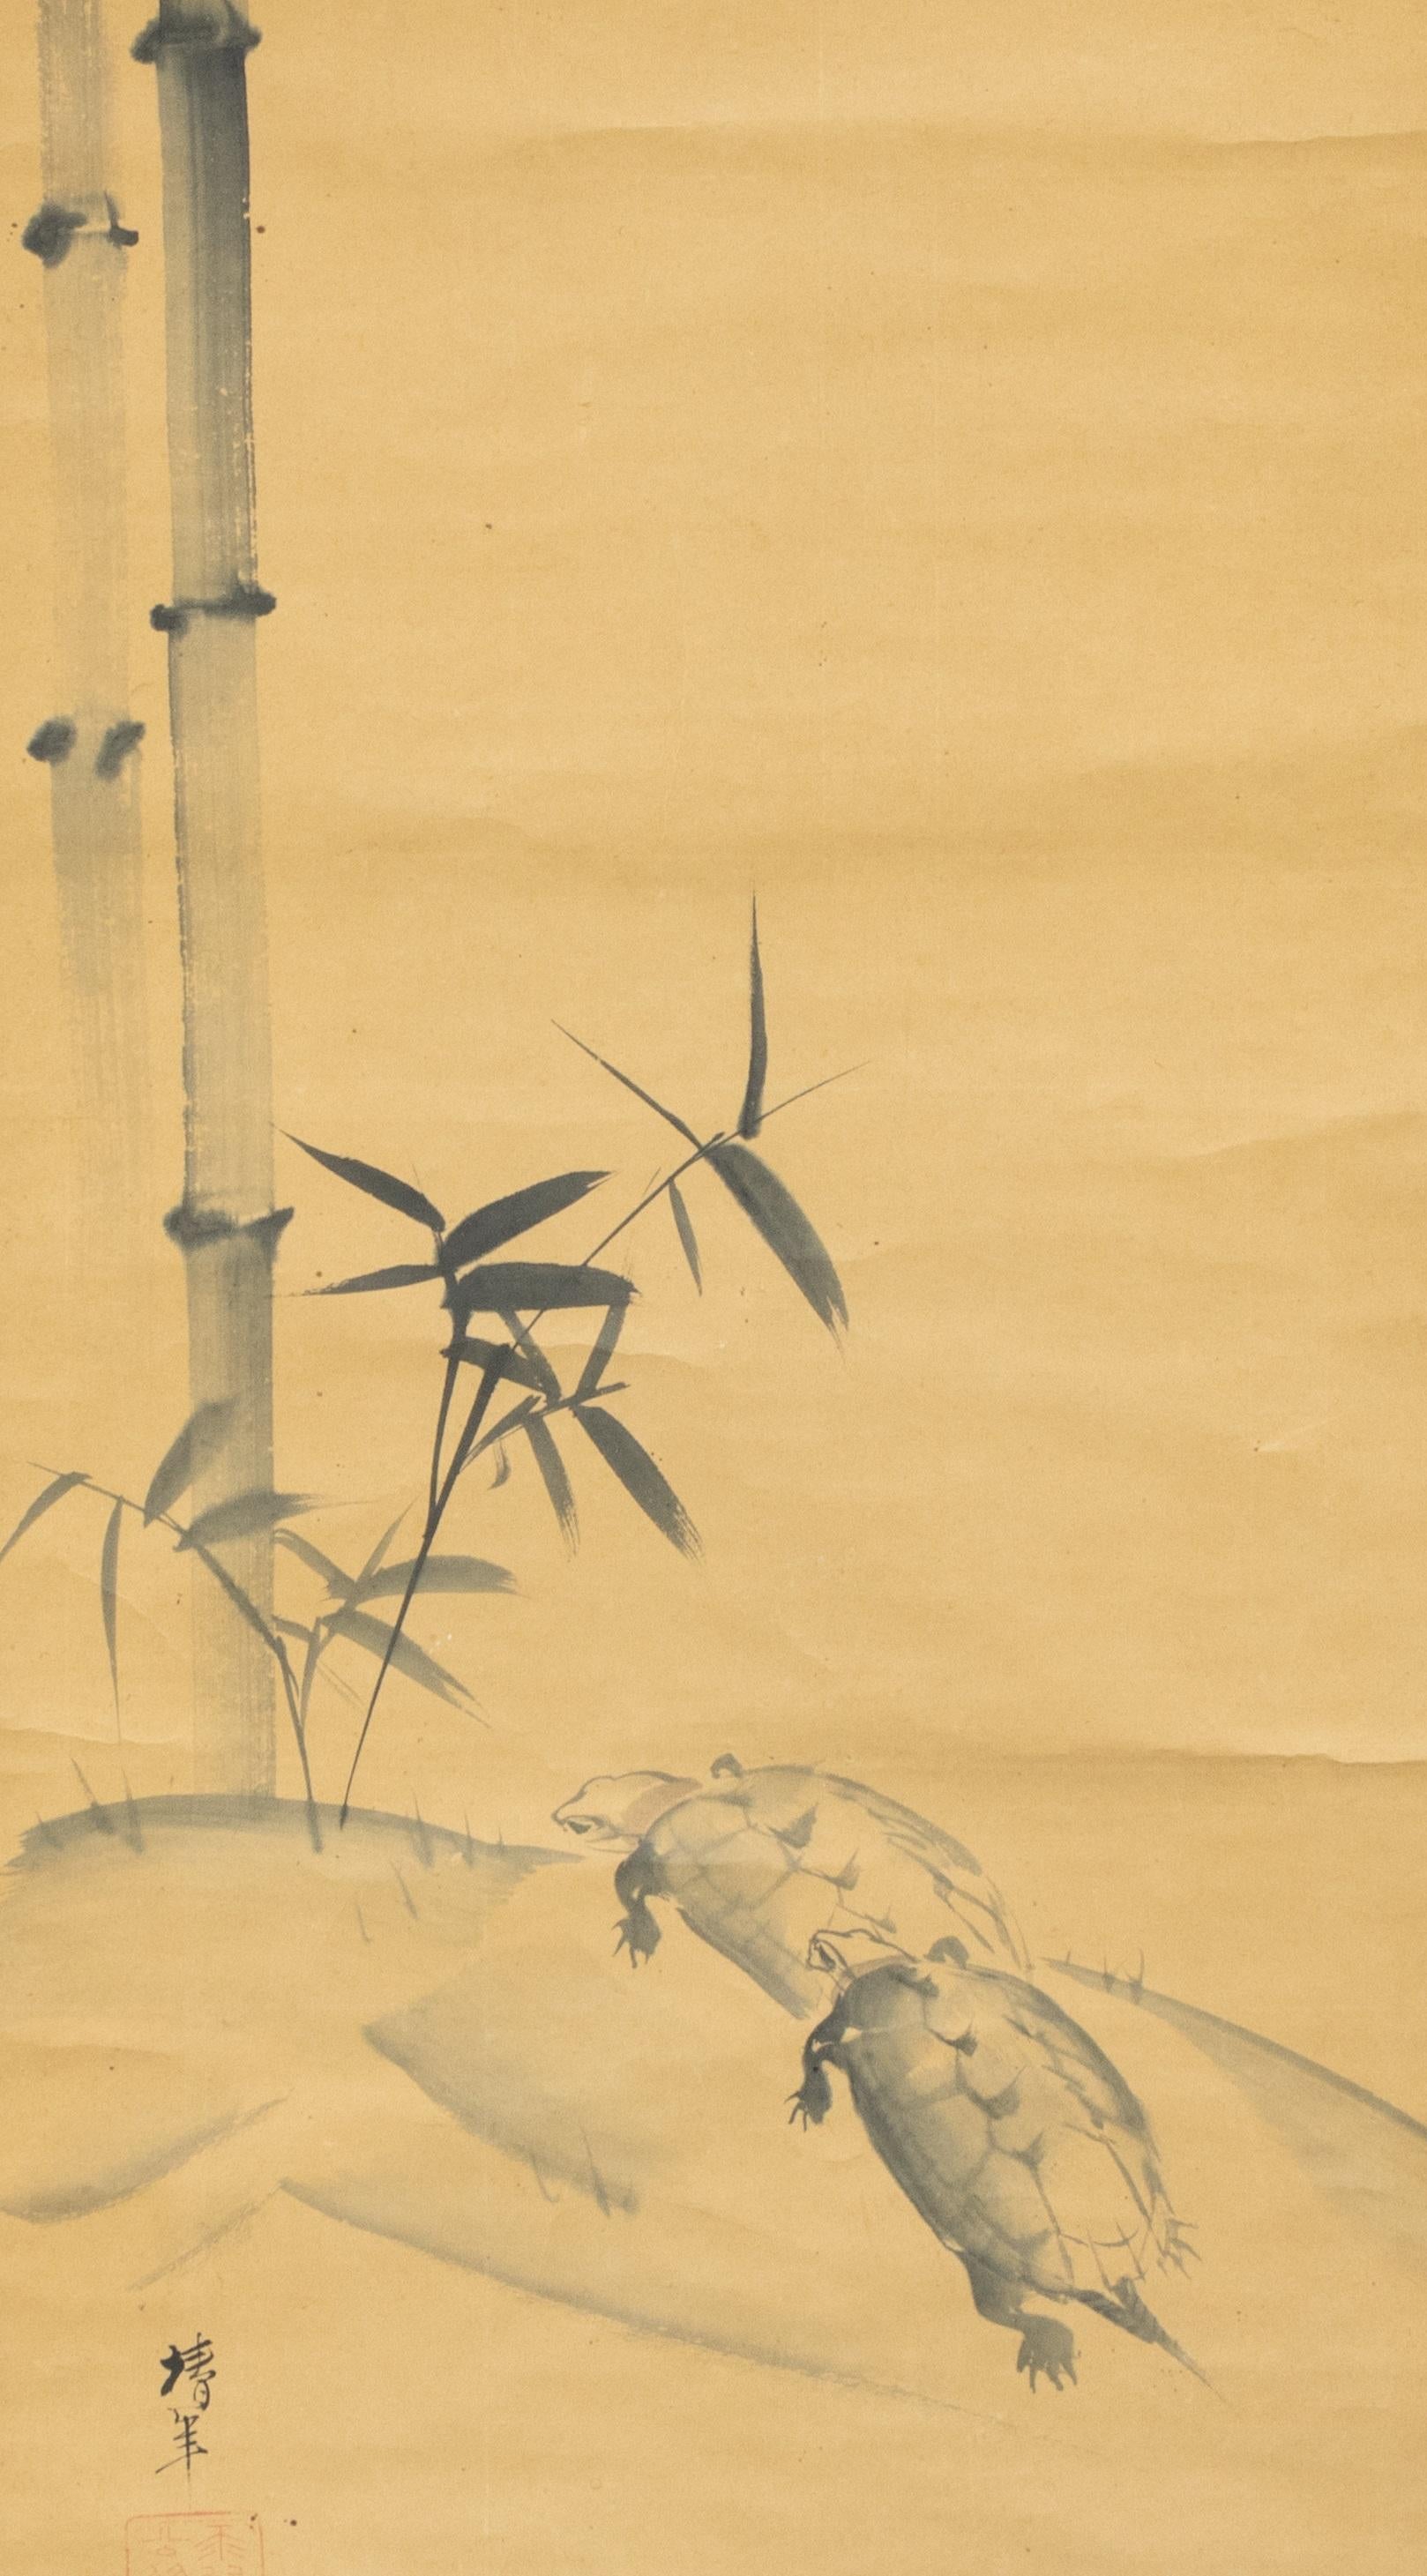 Ônishi Chinnen (1792 - 1851) Schilpadden en bamboo
Rolschildering / scroll op papier, benen rollers. B 125,7 x 48,9 / 179,5 x 59,5 cm
125,7 x 48,9 / 179,5 x 59,5 cm.